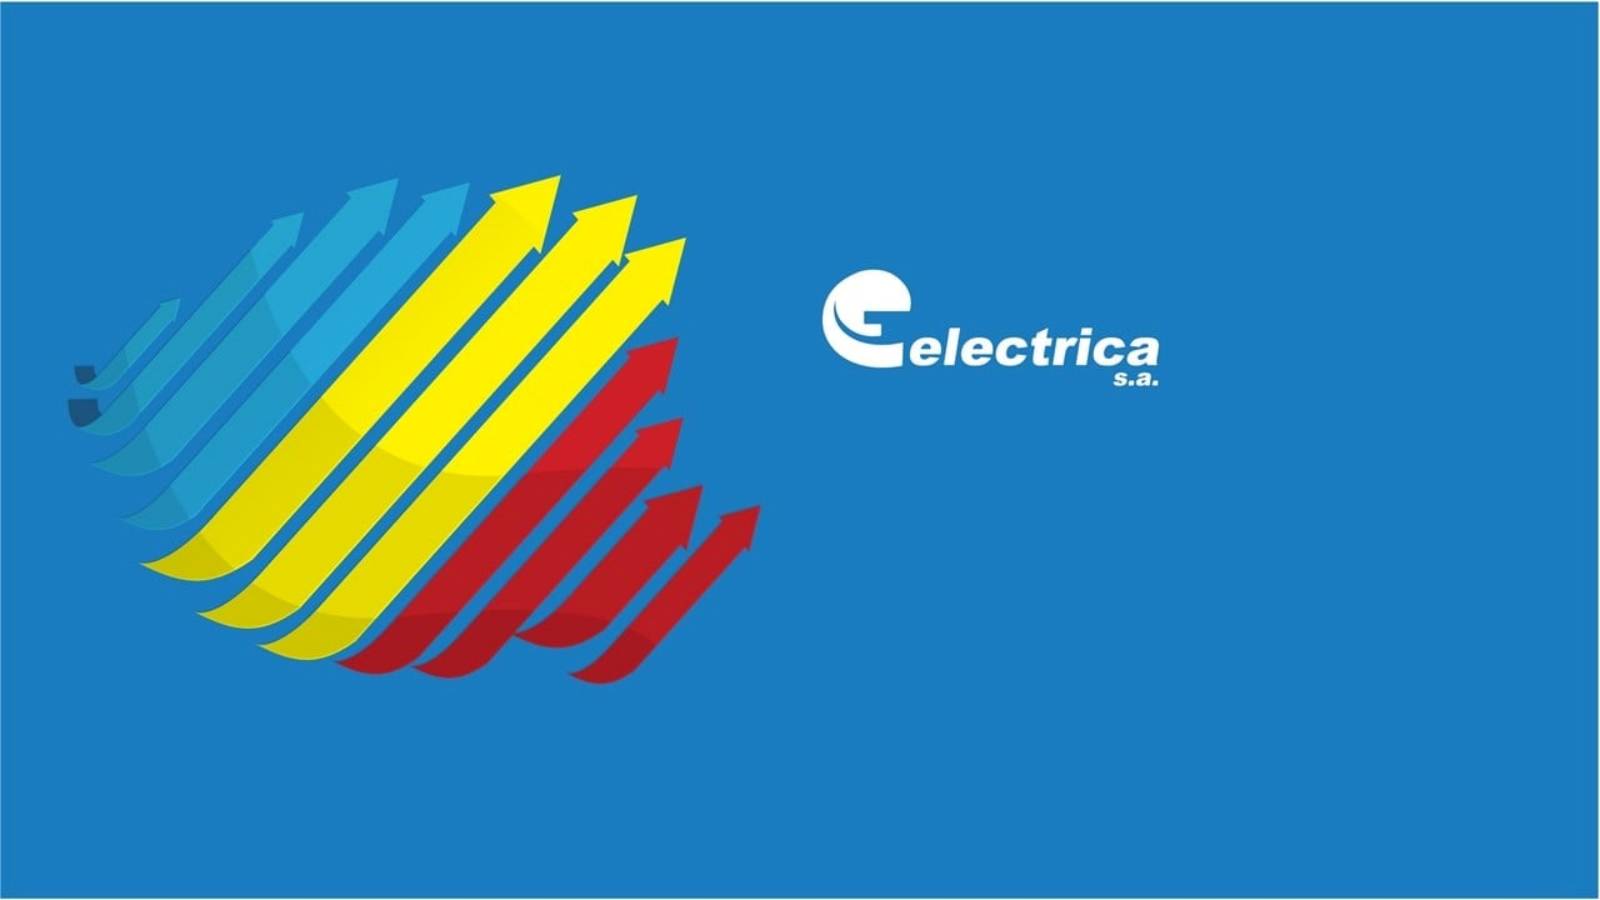 Electrica officiella krav SISTA MINUTEN VIKTIG information Rumänska kunder